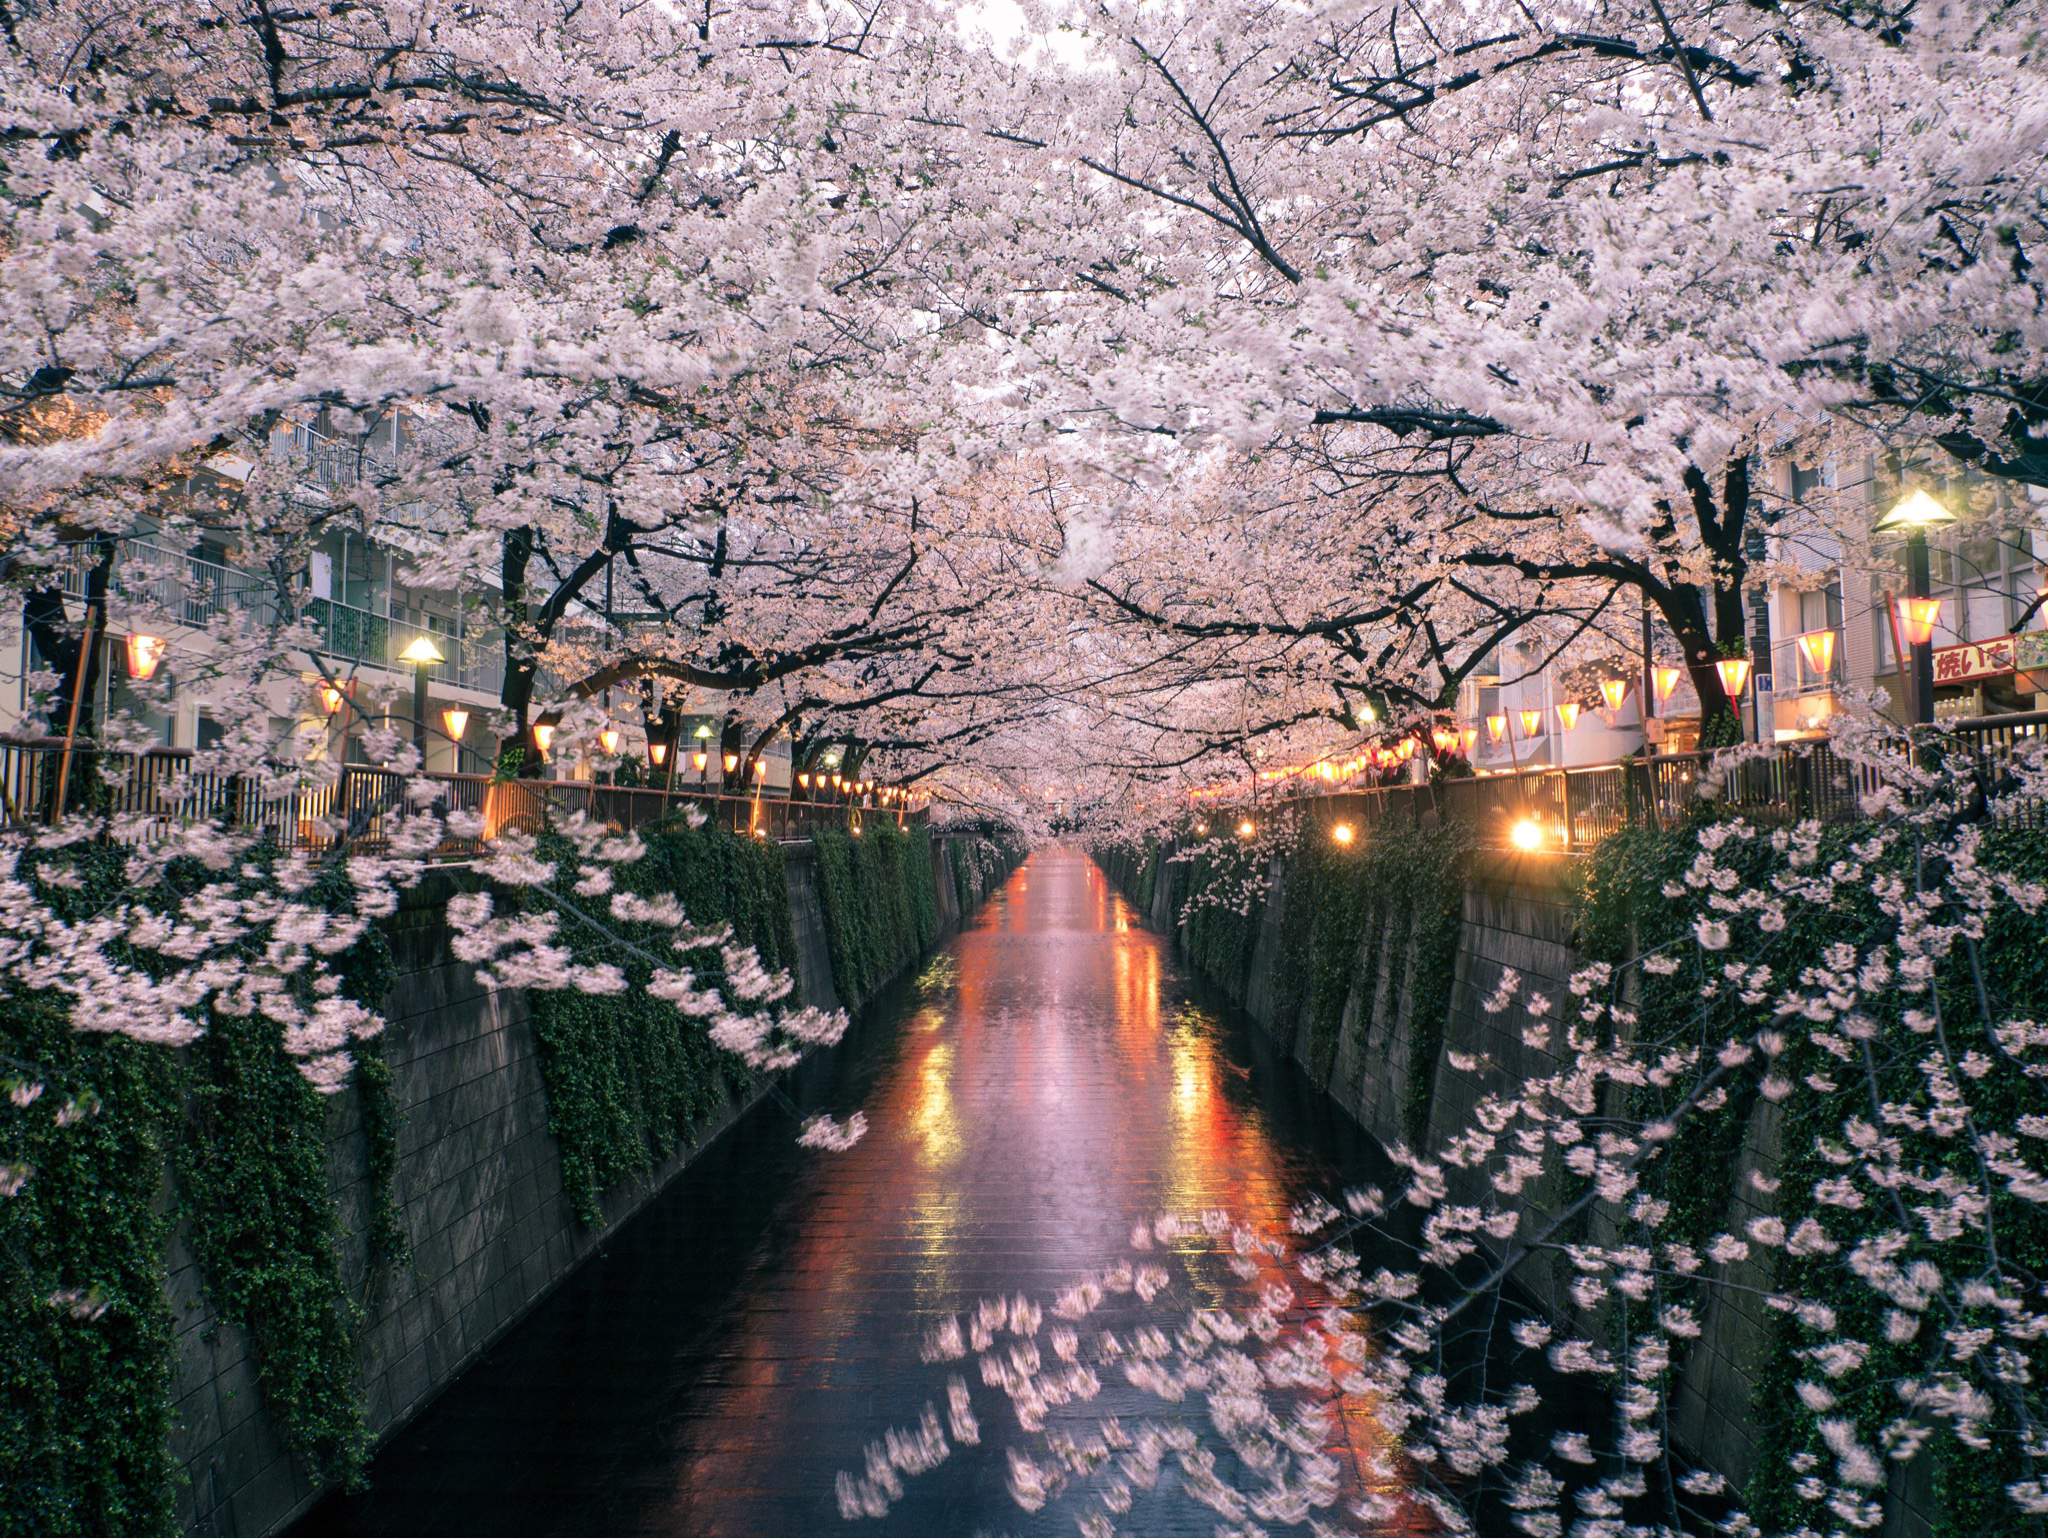 Cherry blossom onlyfan